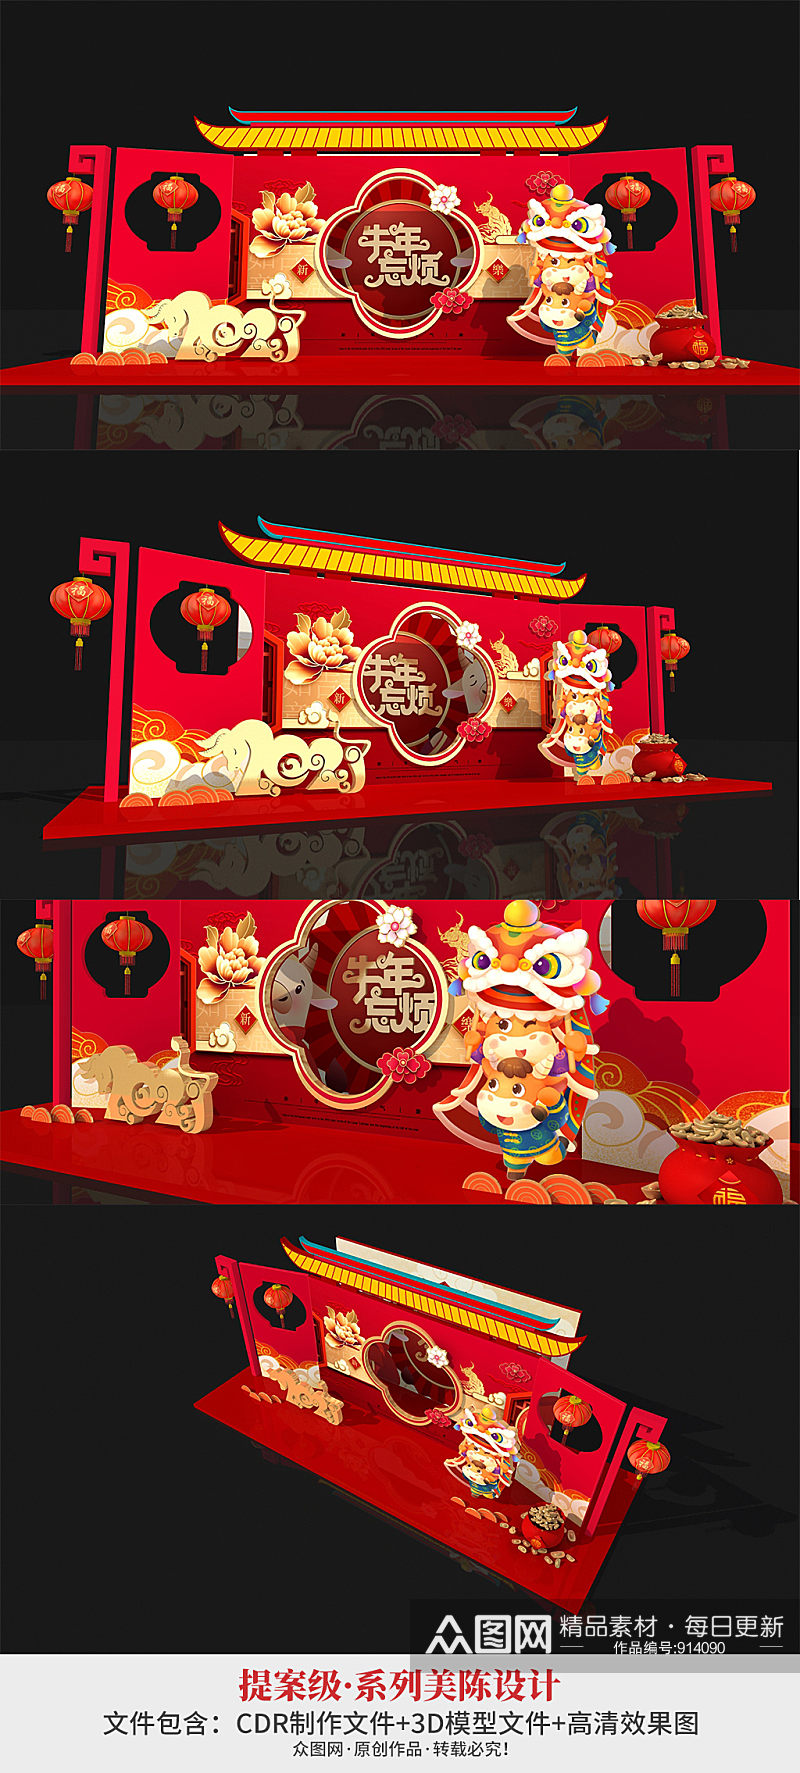 红色中式商场拍照框合影区 年会 新年美陈 春节美陈大厅布置素材